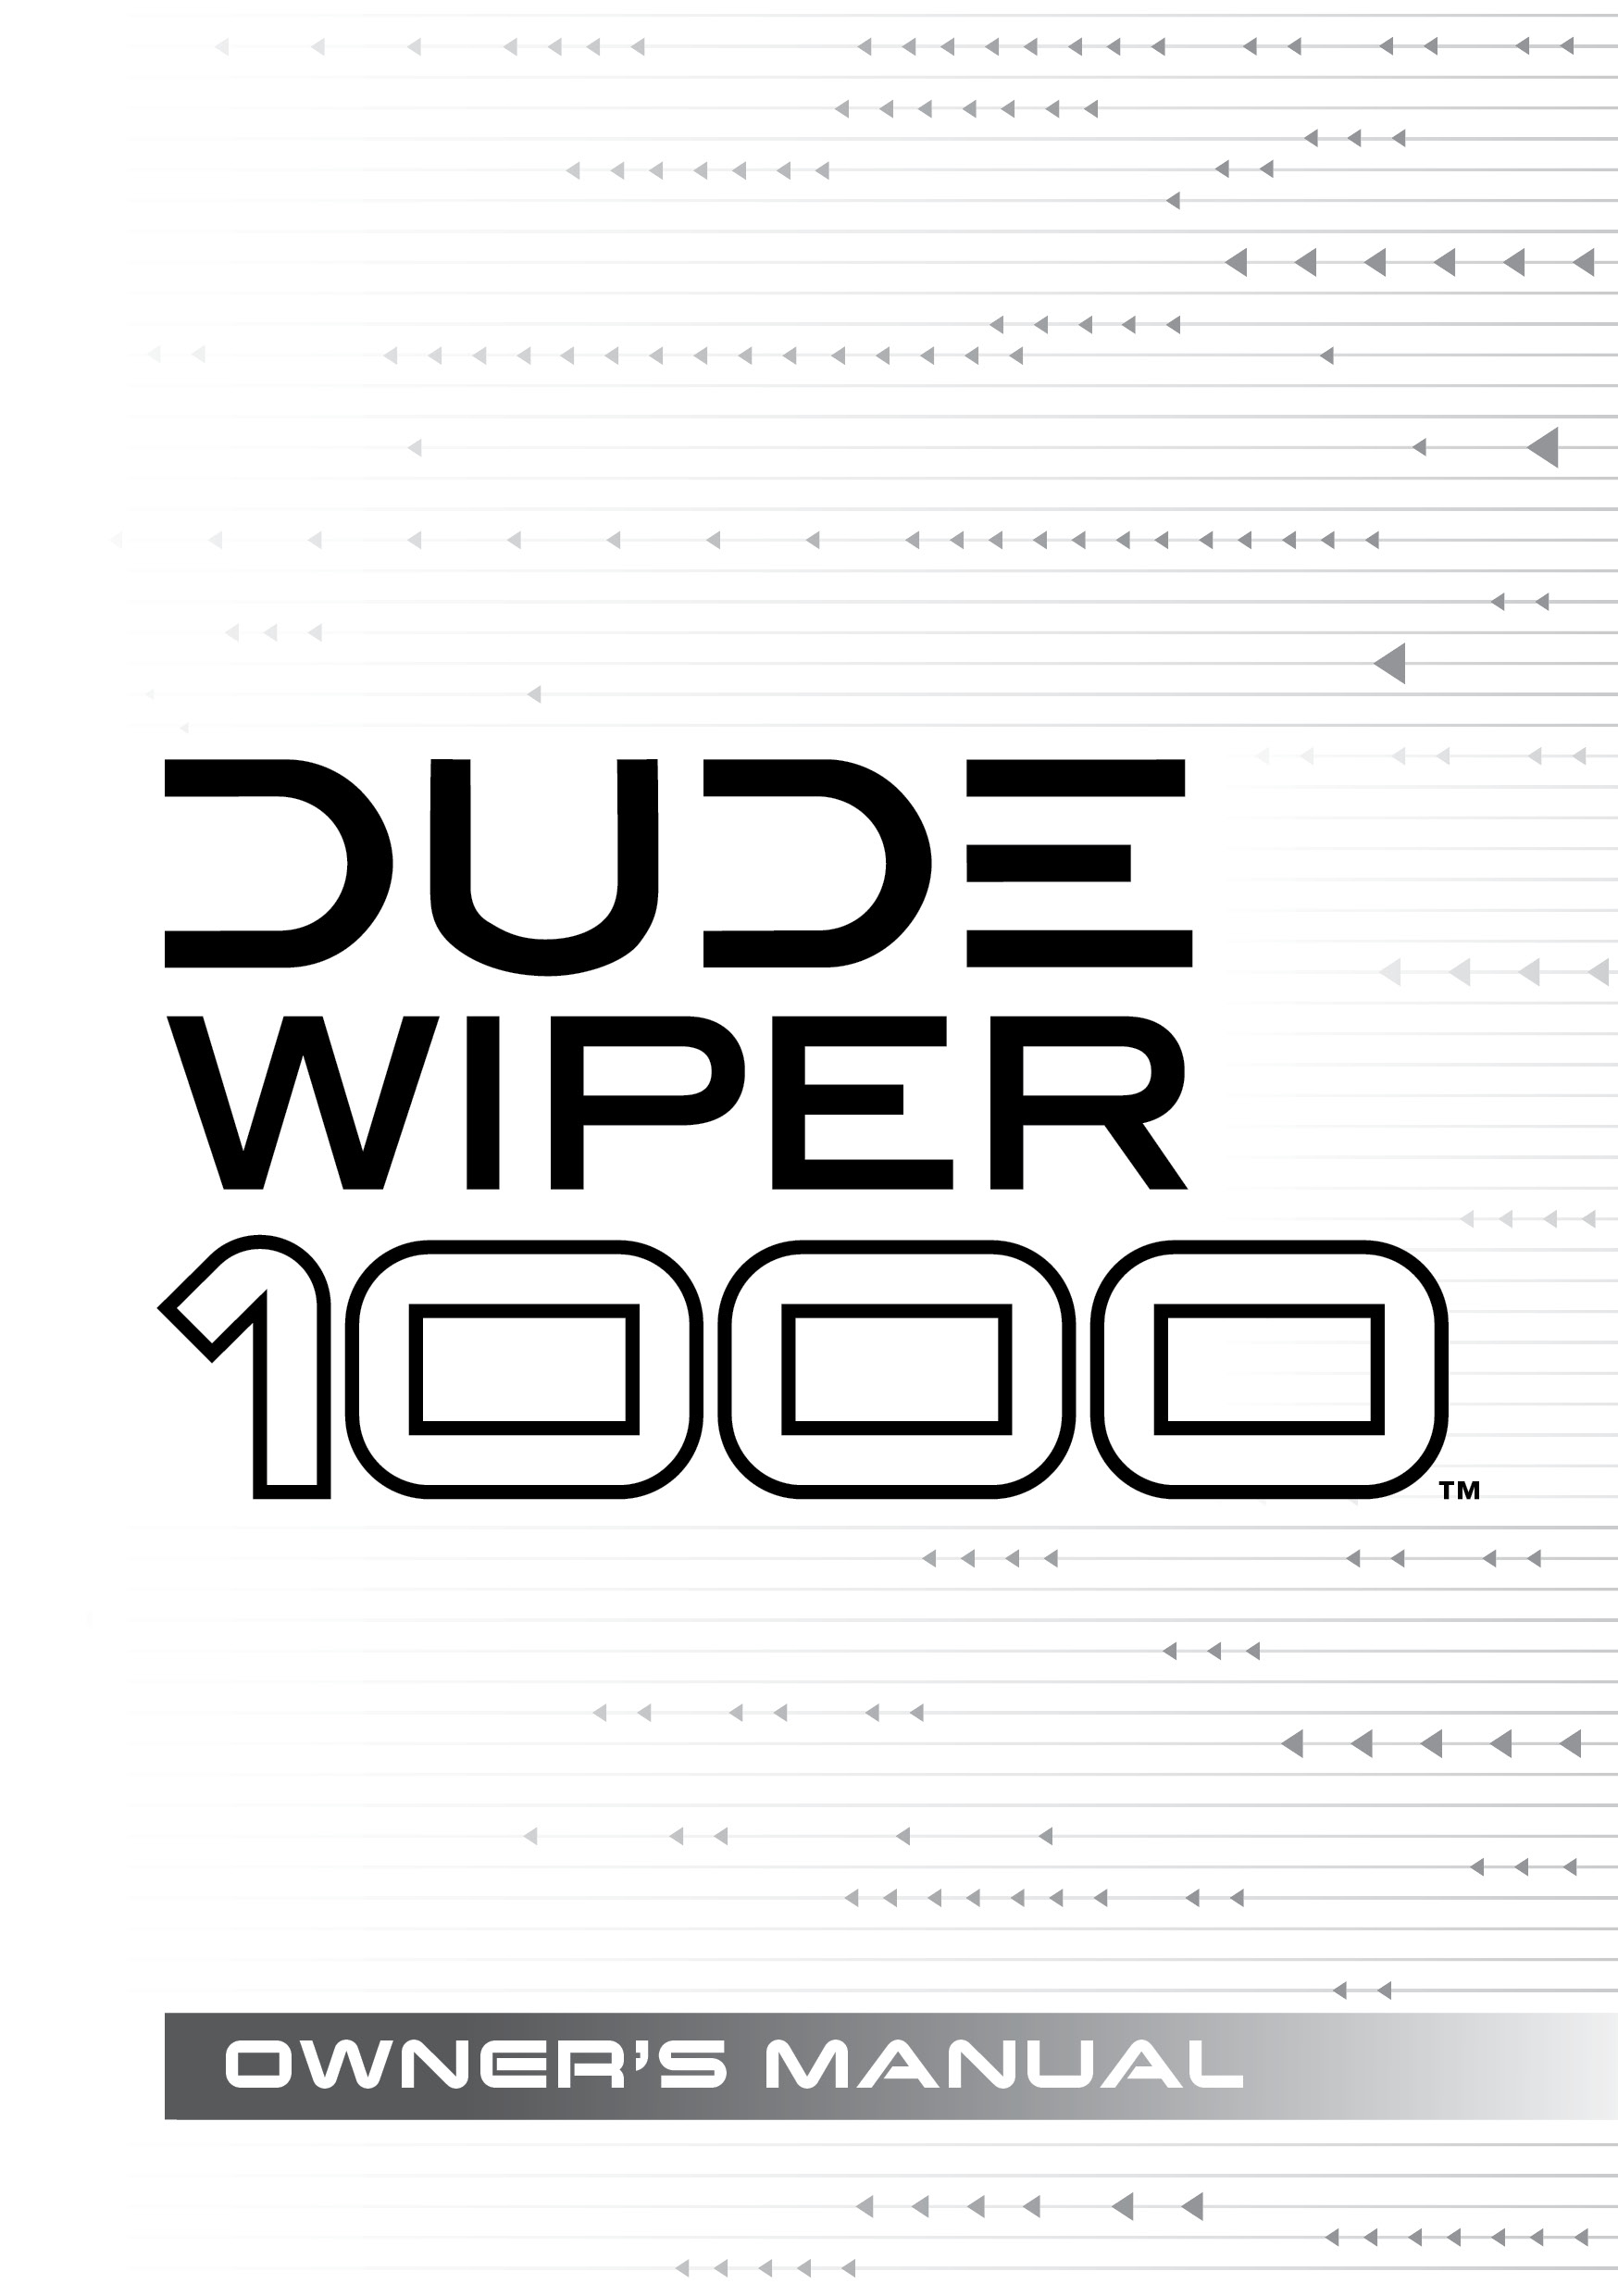 Dude_Wiper_1000_manual_v6.jpg